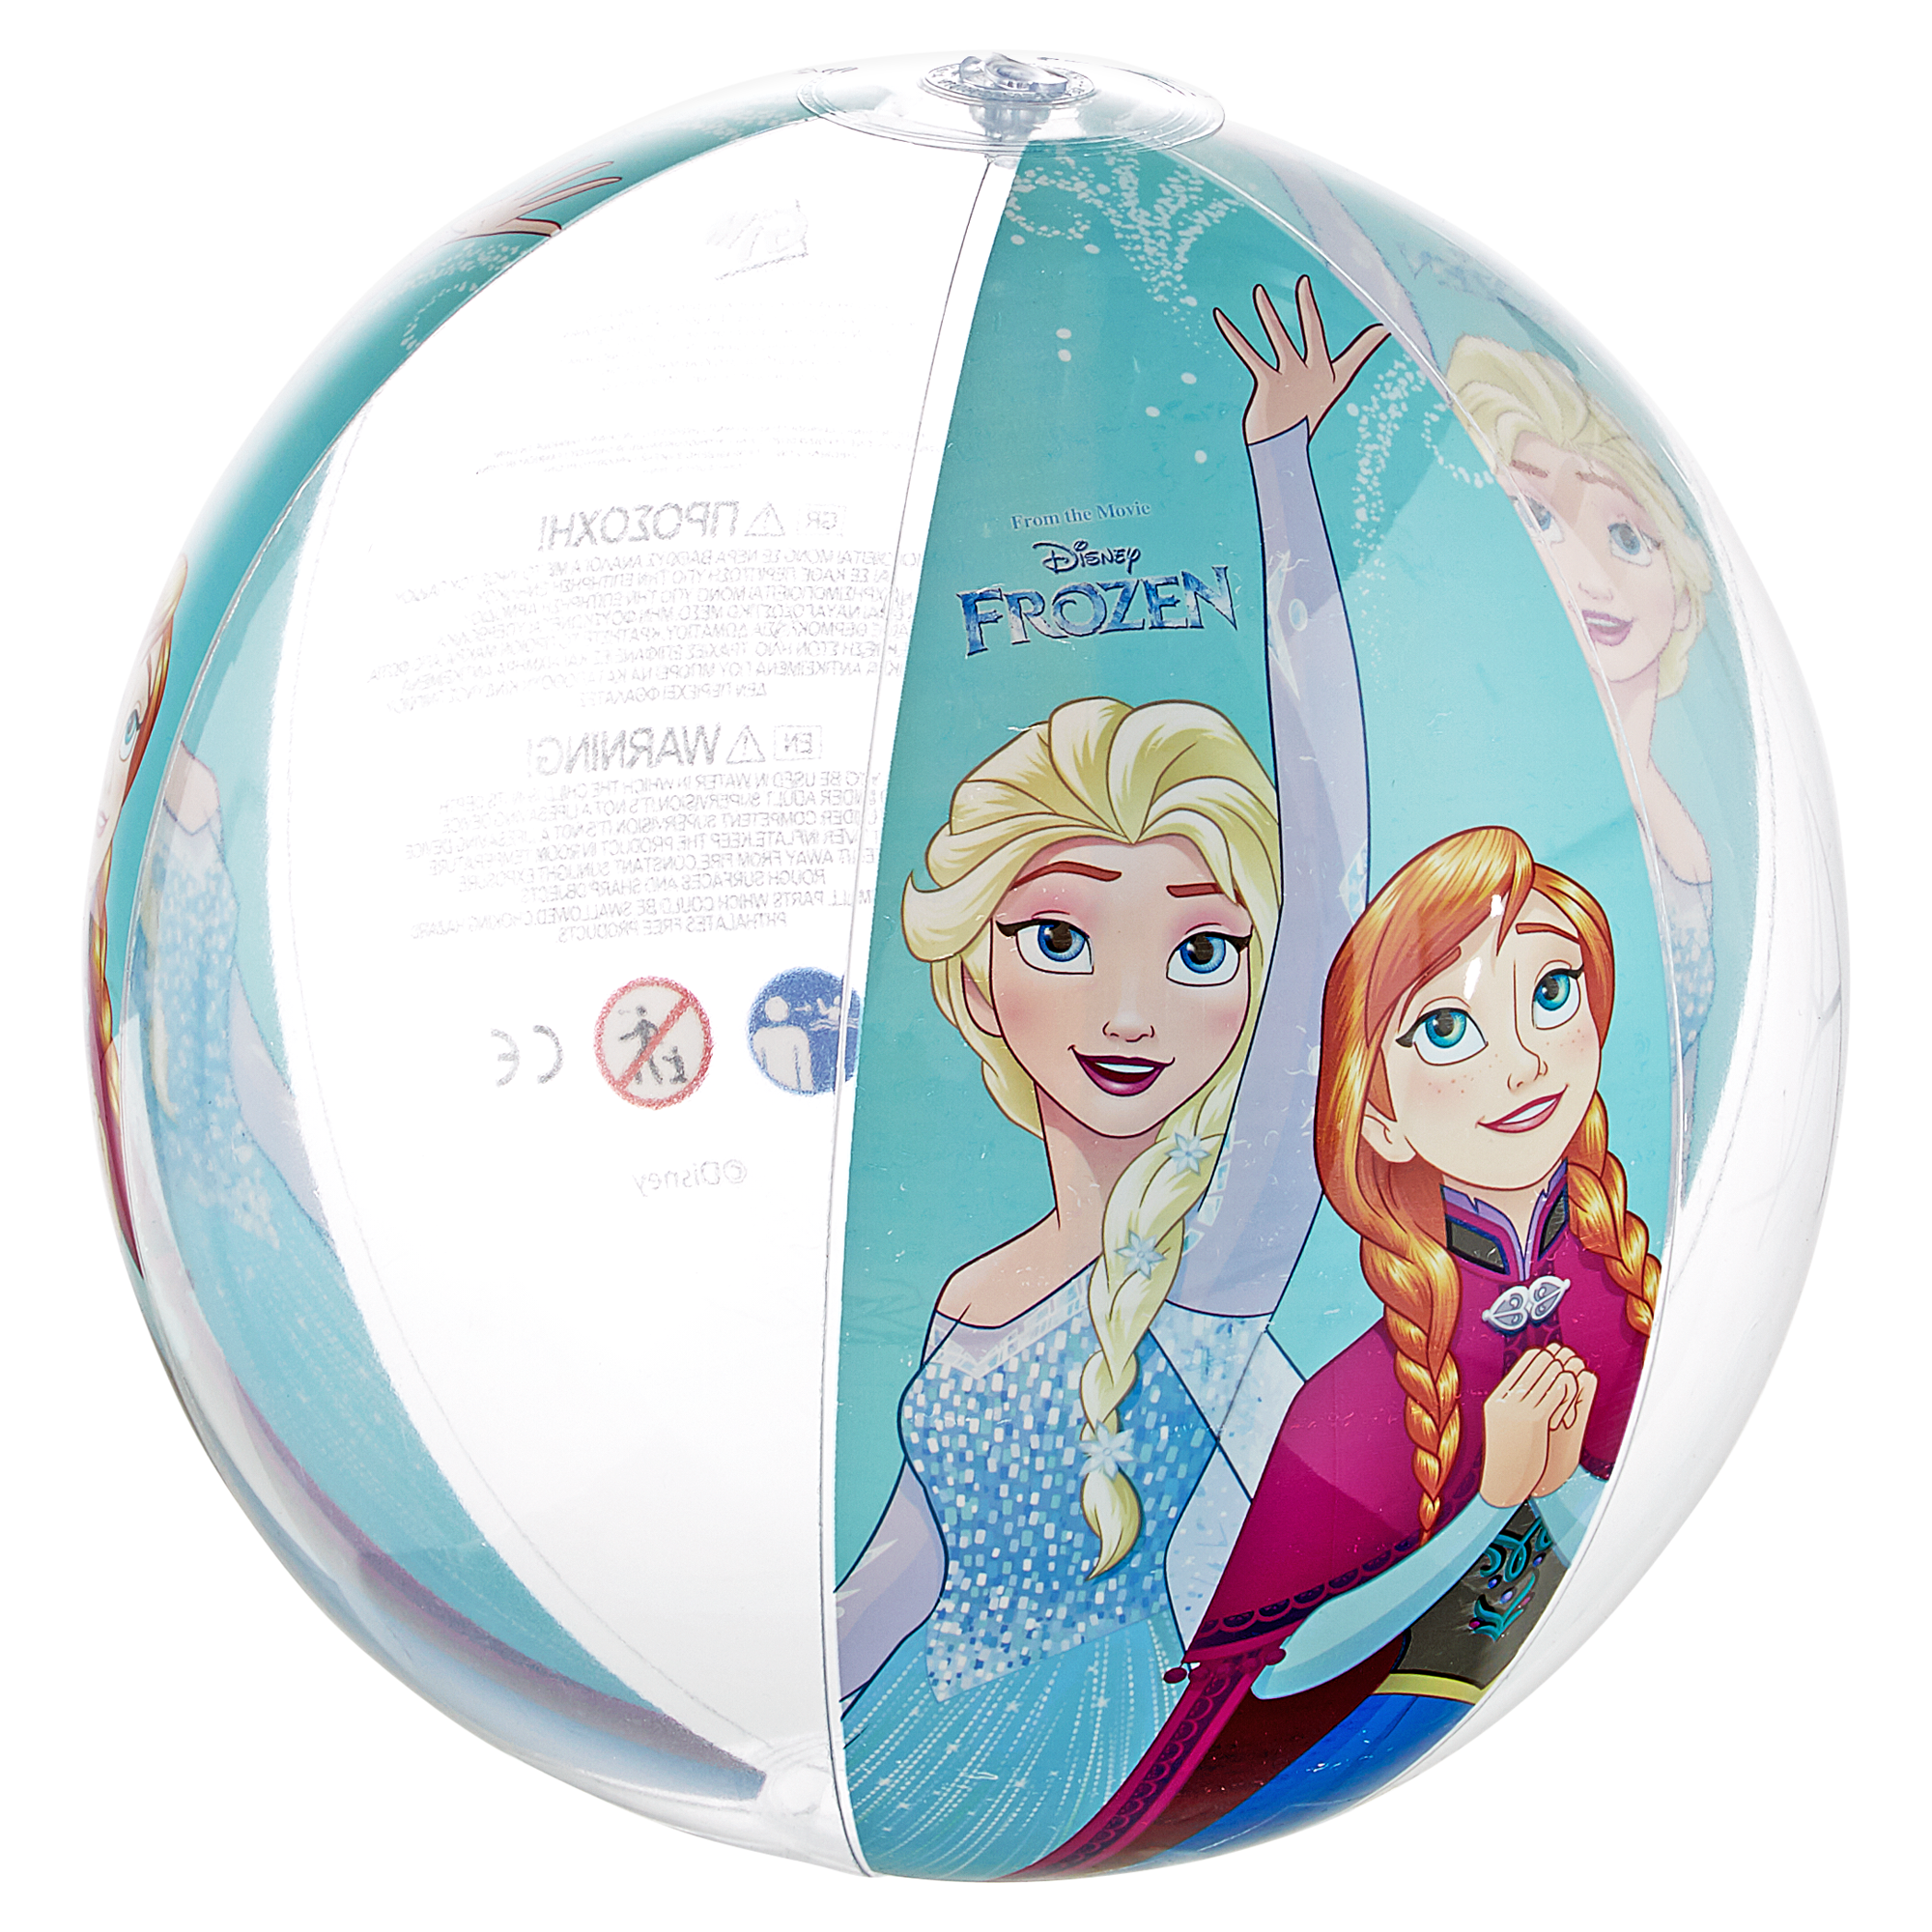 Wasserball "Frozen" aufblasbar + product picture